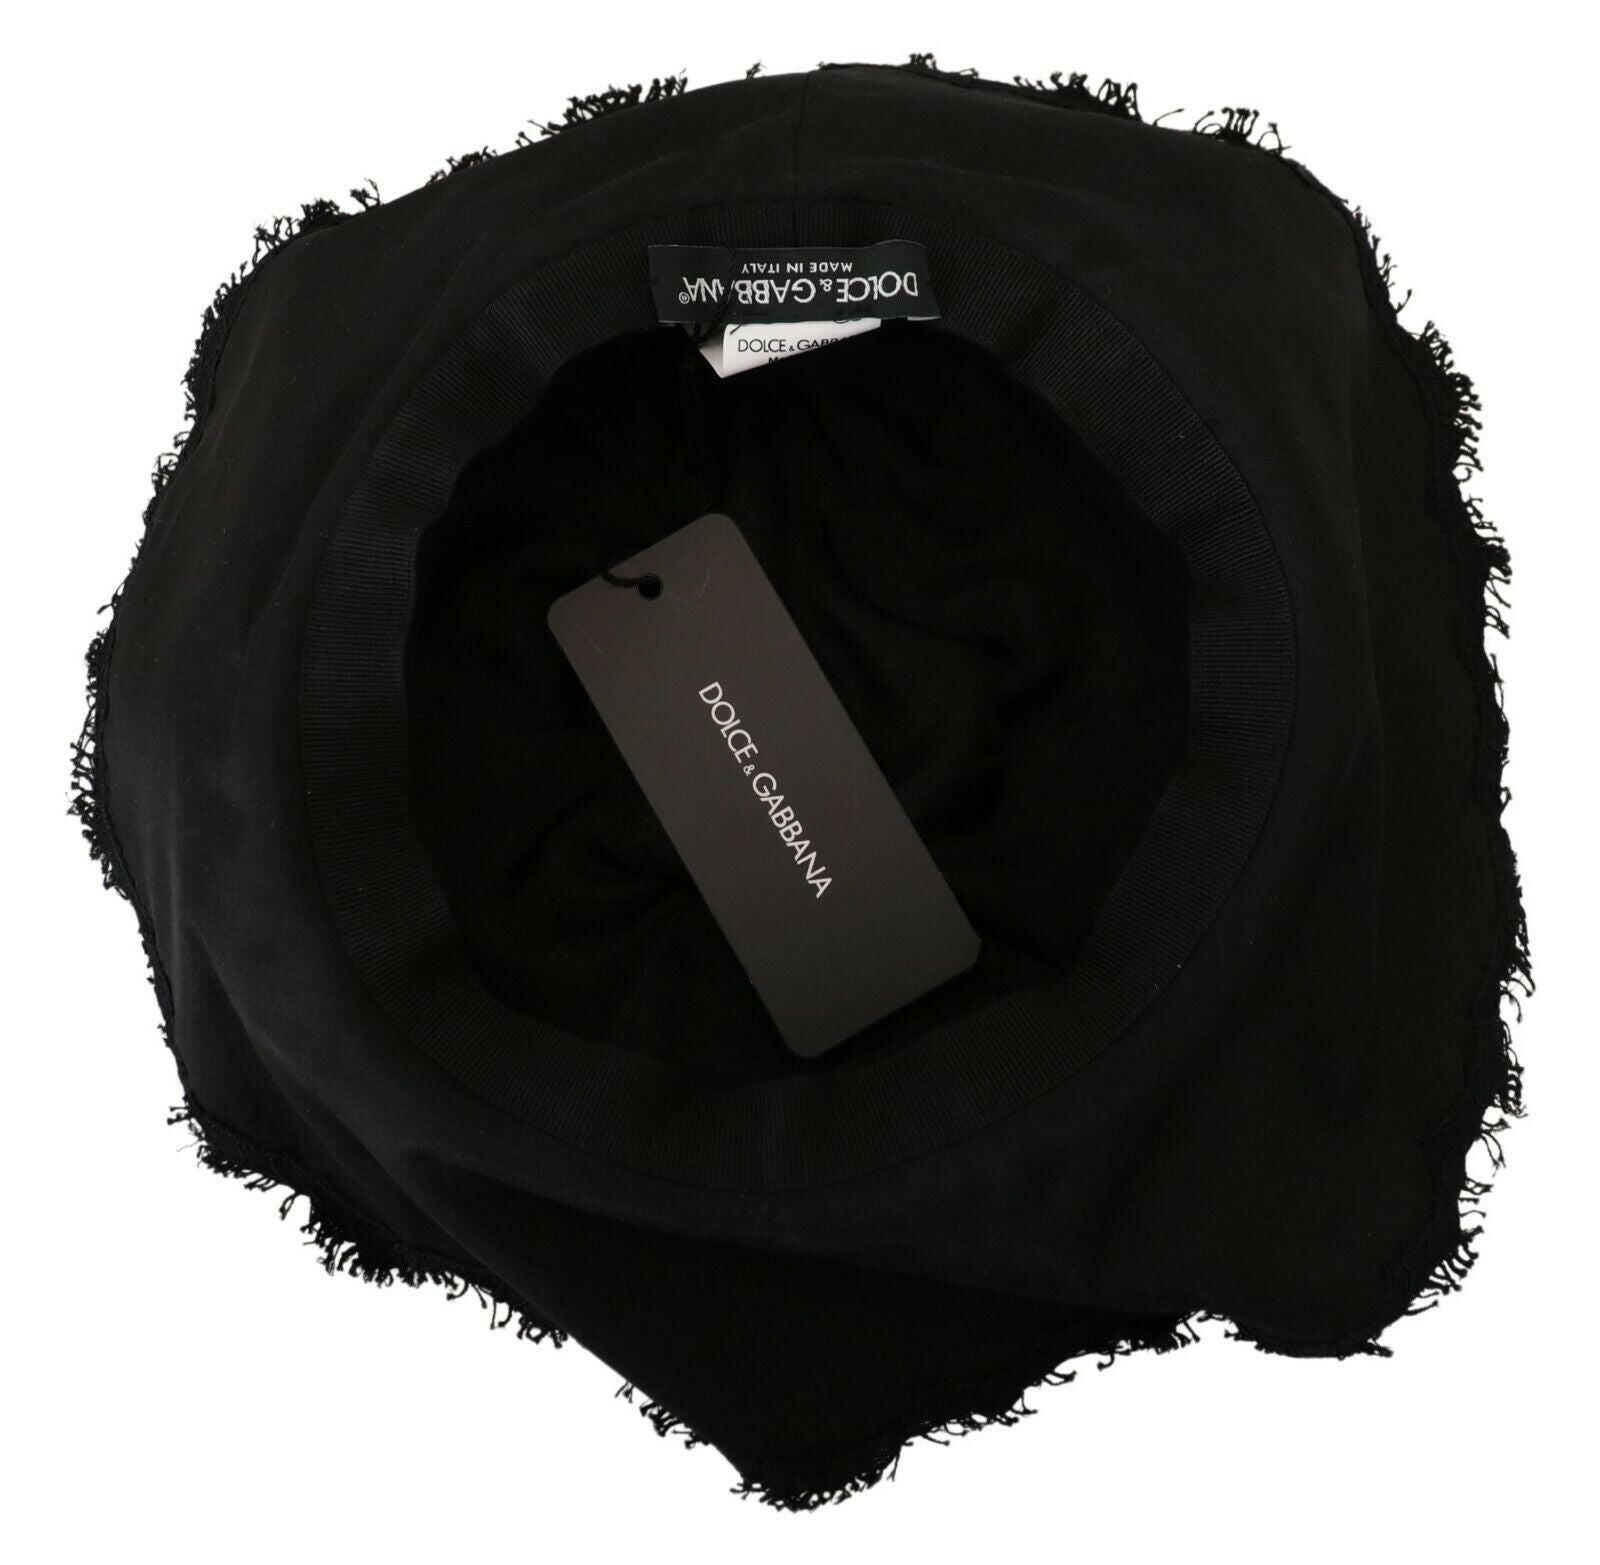 Dolce & Gabbana Black Cotton Wide Brim Shade Hat - GENUINE AUTHENTIC BRAND LLC  